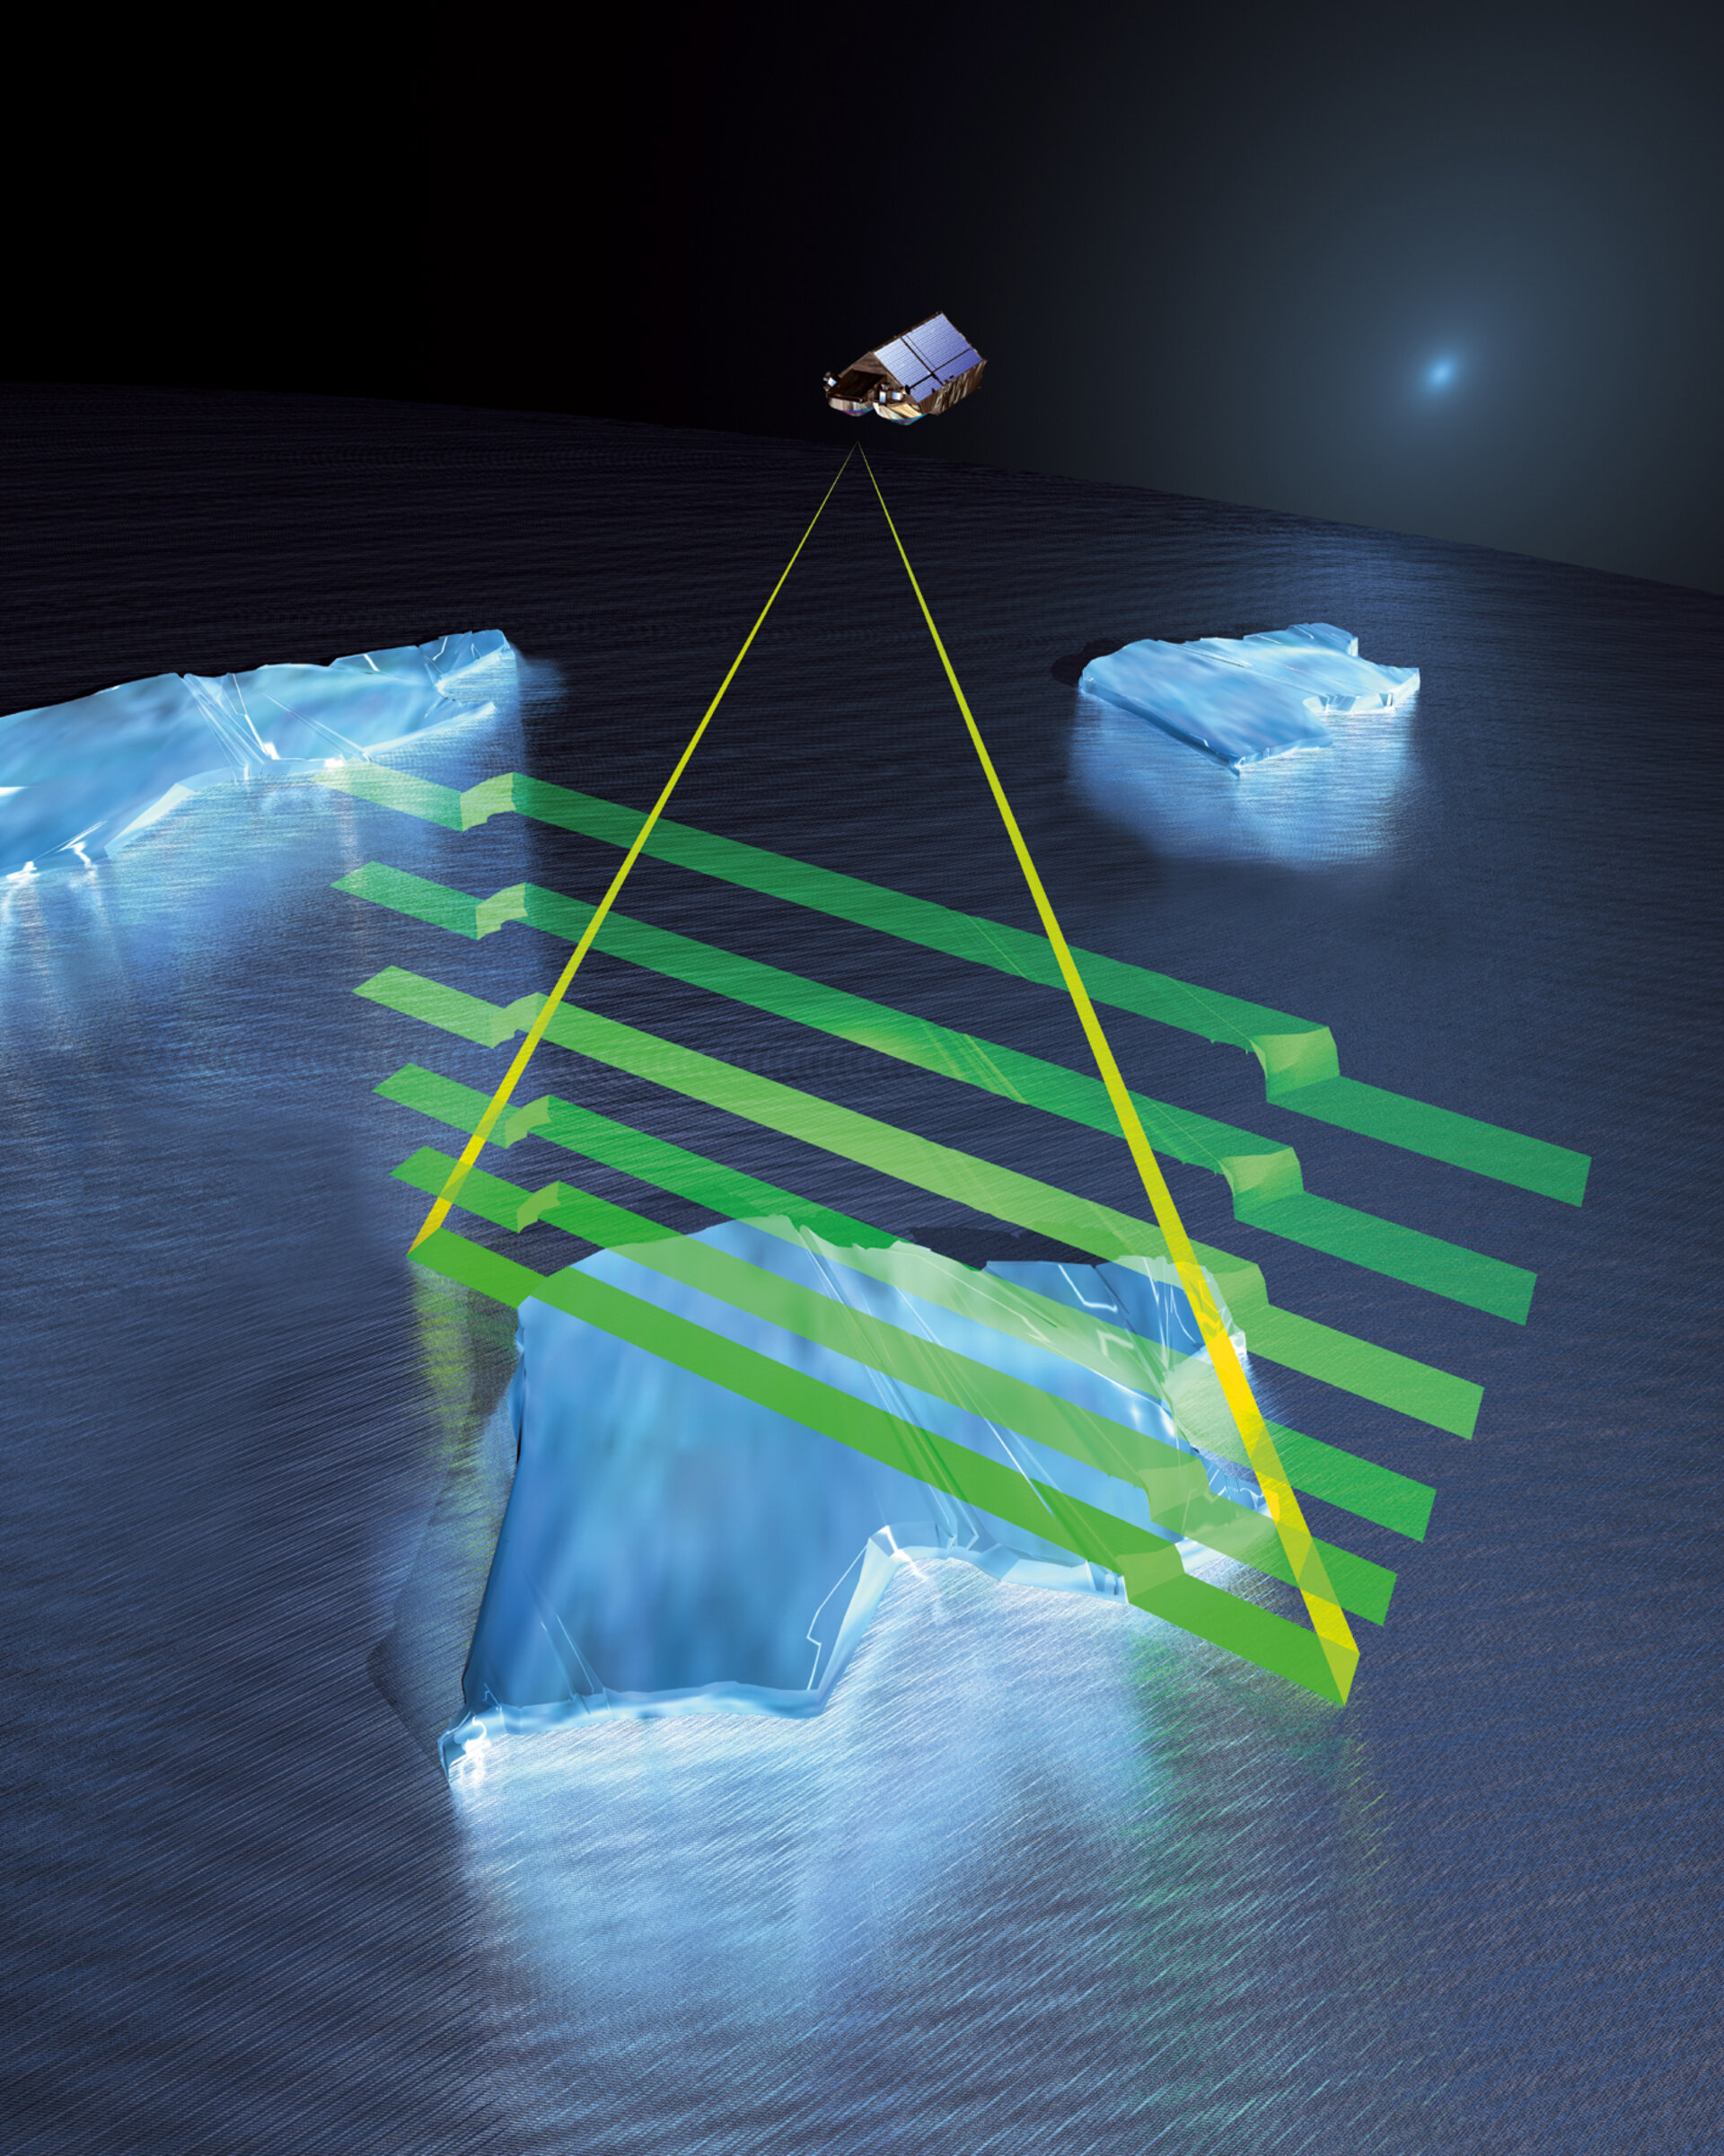 Das Prinzip der Eisdickenmessung mittels Radar bei SIRAL